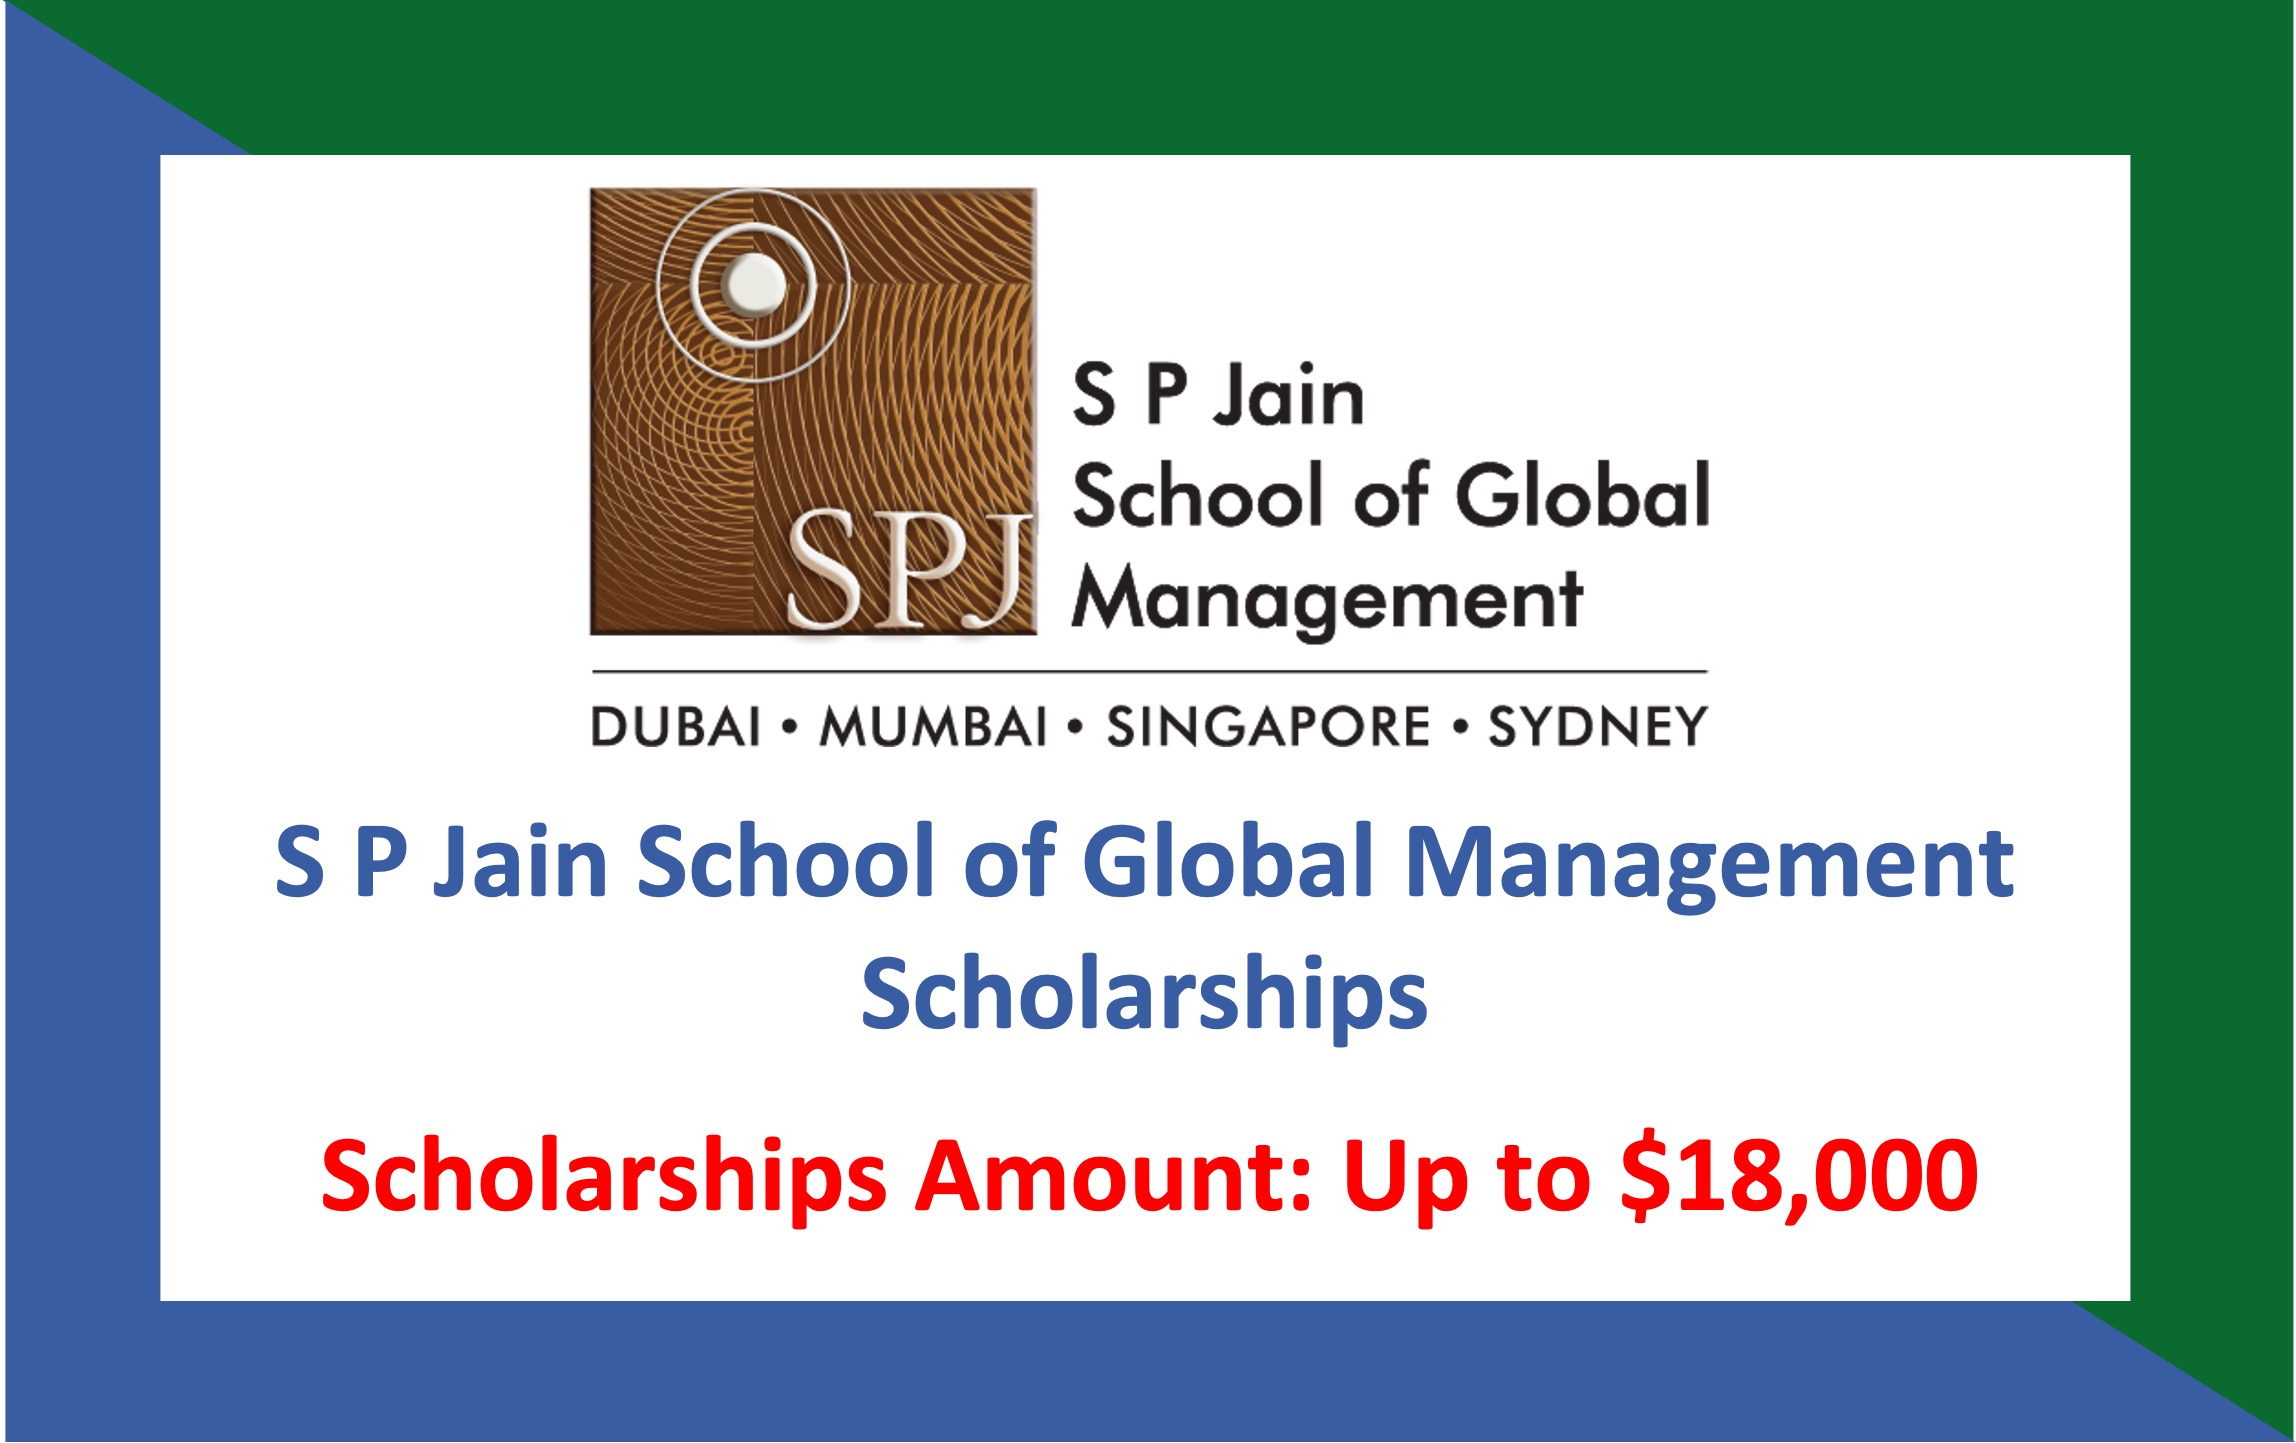 S P Jain School of Global Management Scholarships